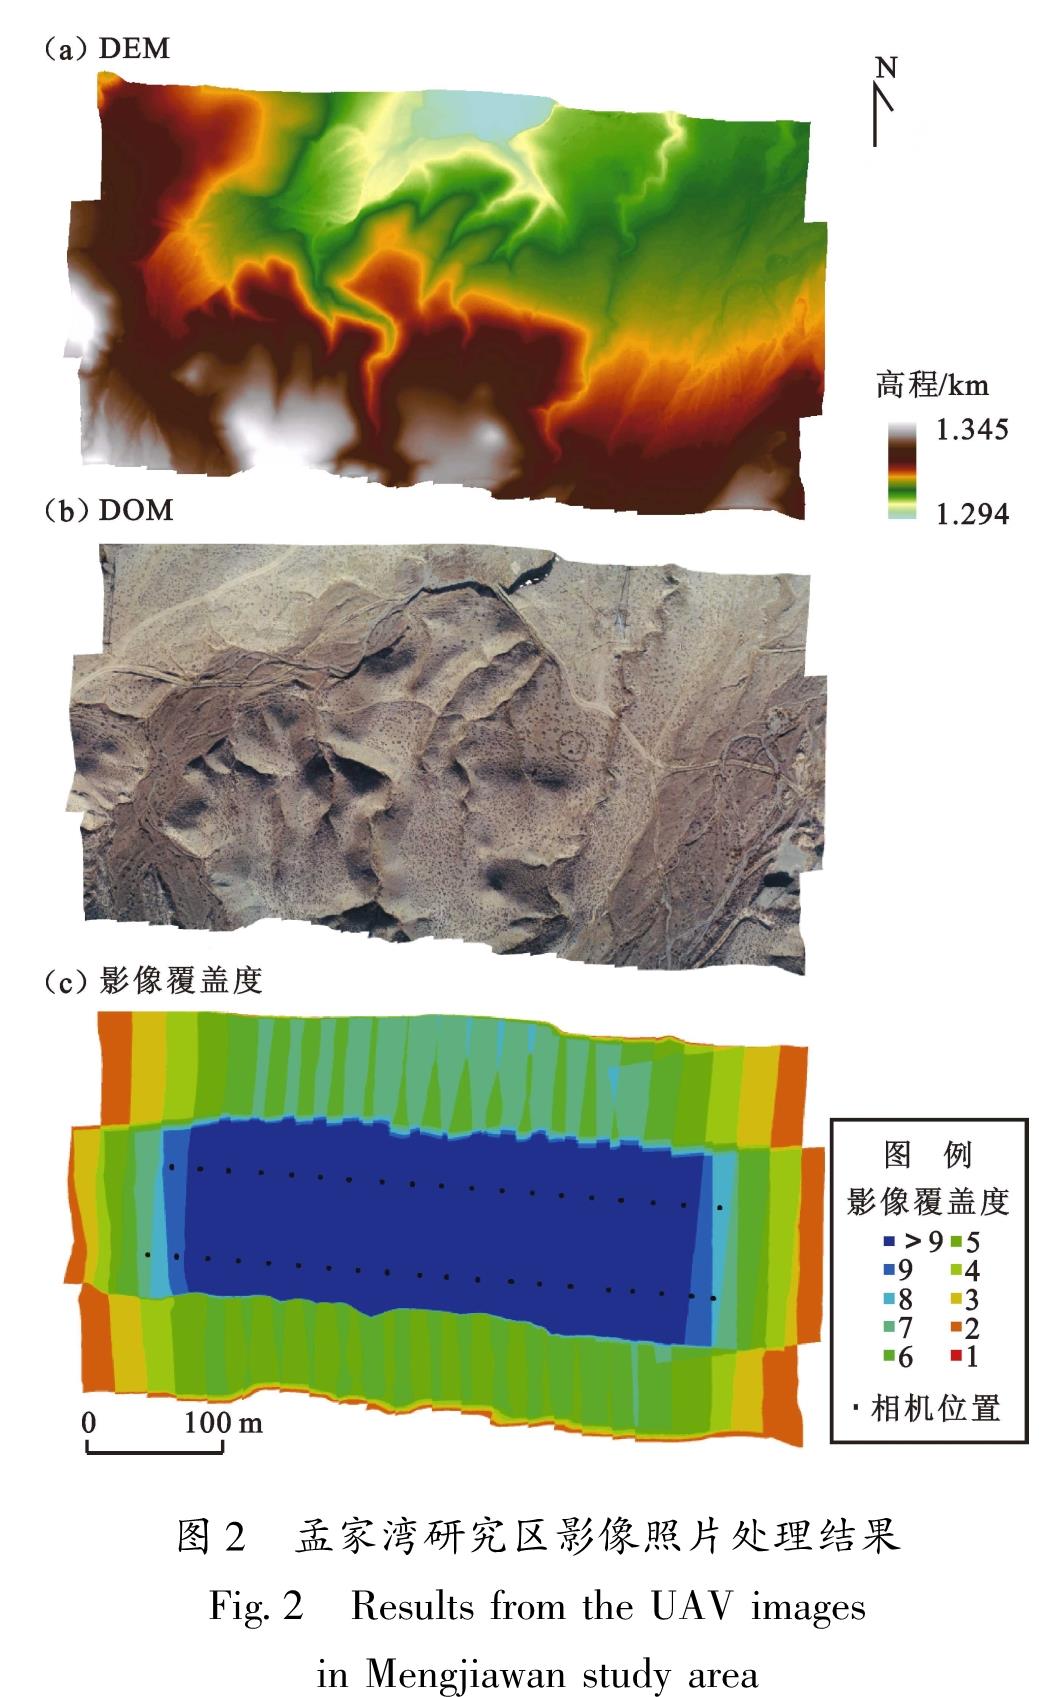 图2 孟家湾研究区影像照片处理结果<br/>Fig.2 Results from the UAV images in Mengjiawan study area